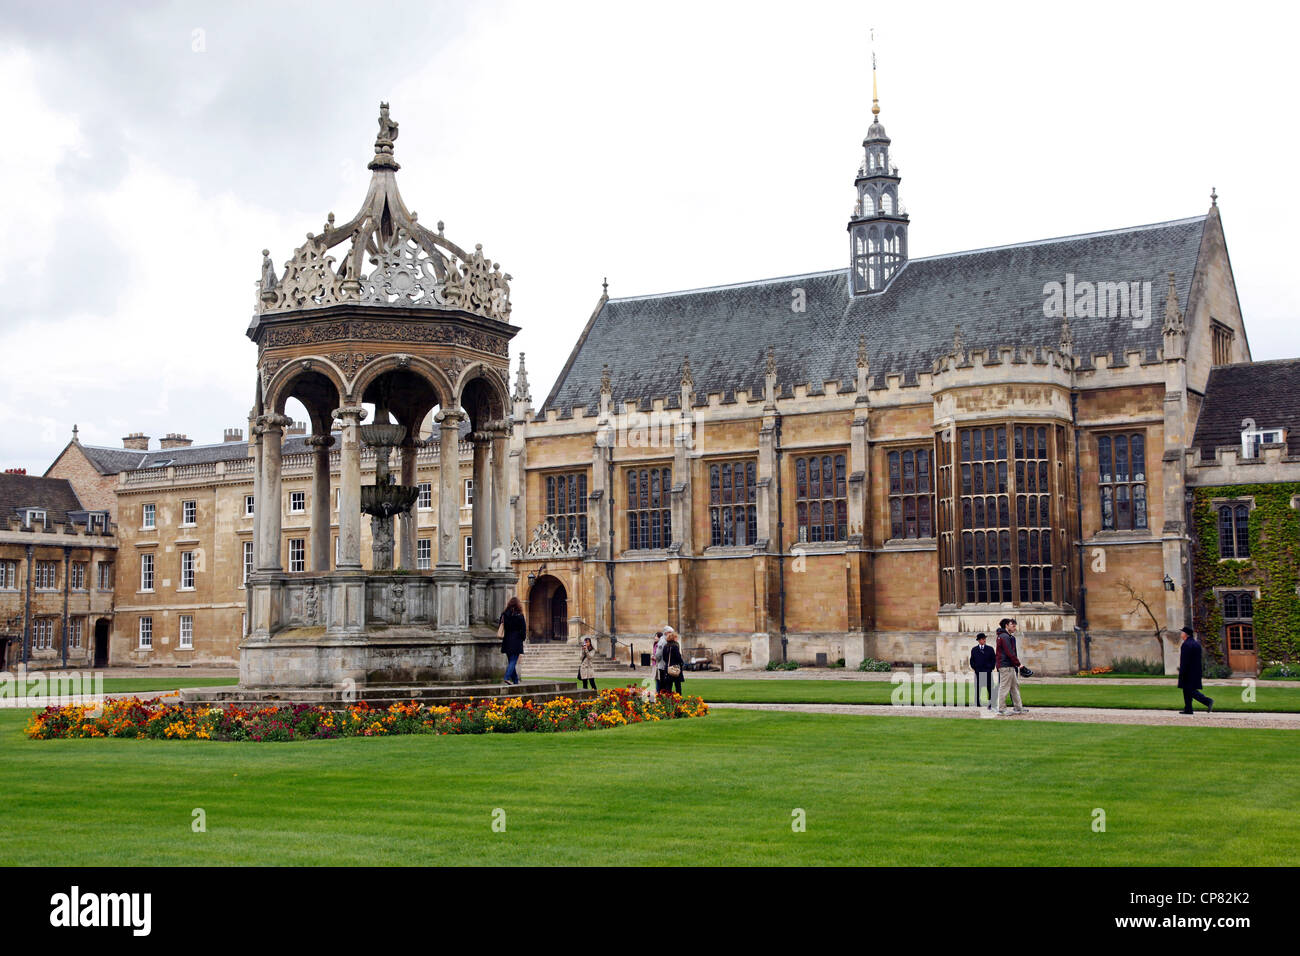 Trinity College, Cambridge, England Stock Photo